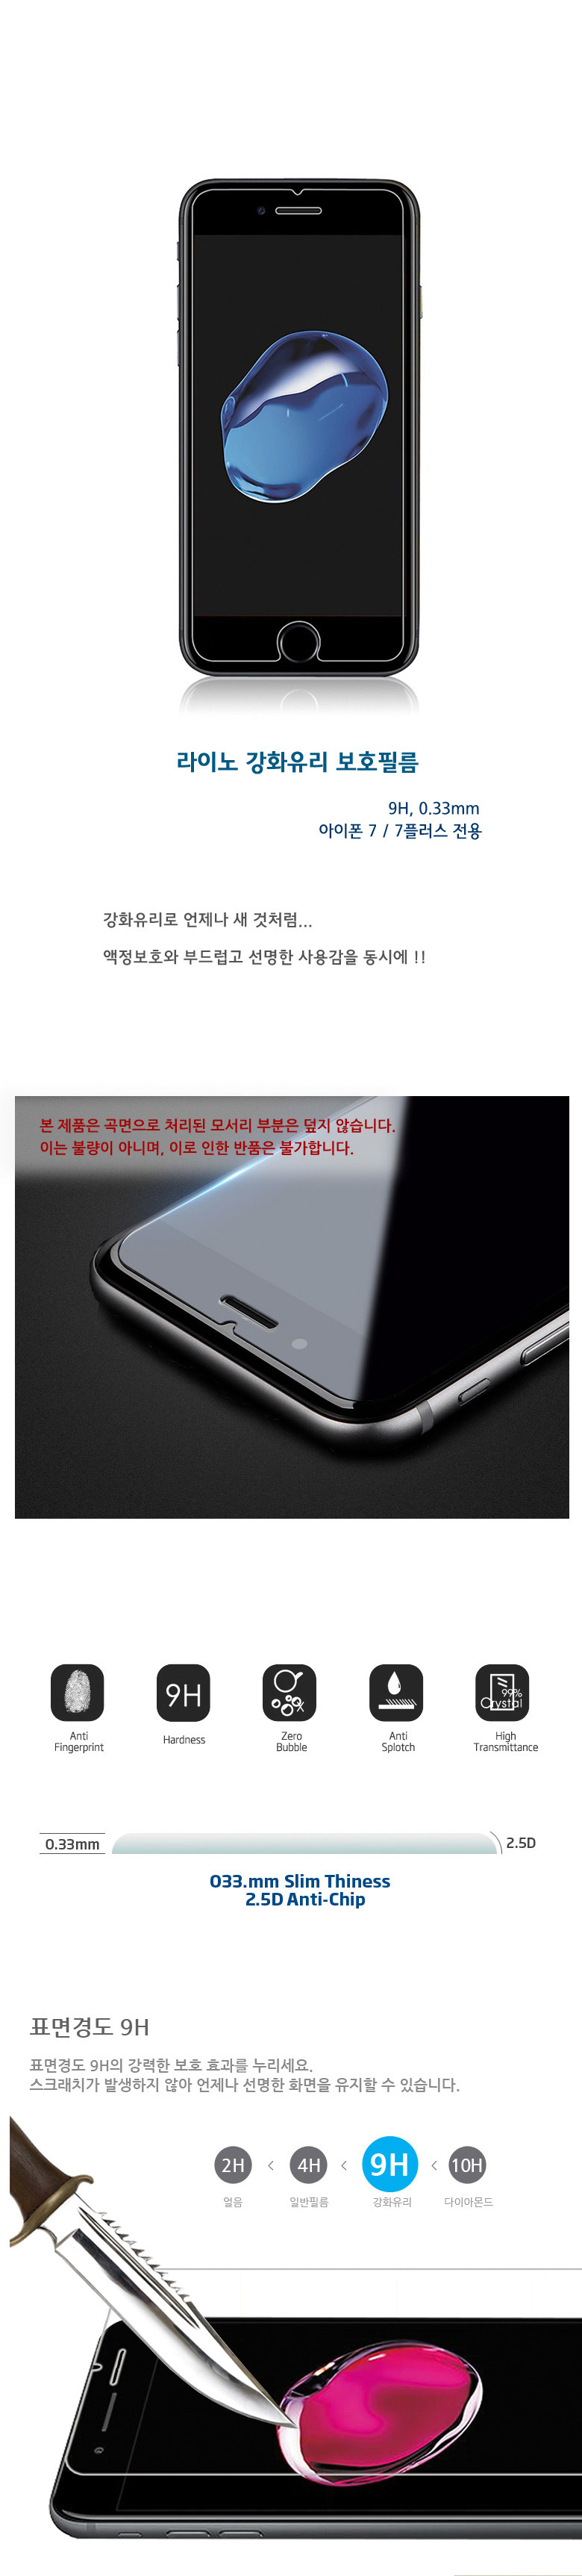 (아이폰 7 7plus) 0.33mm 9H 강화유리 필름 - 리얼 글래스 7,900원 - 라이노핏 디지털, 모바일 액세서리, 보호필름, 애플 바보사랑 (아이폰 7 7plus) 0.33mm 9H 강화유리 필름 - 리얼 글래스 7,900원 - 라이노핏 디지털, 모바일 액세서리, 보호필름, 애플 바보사랑